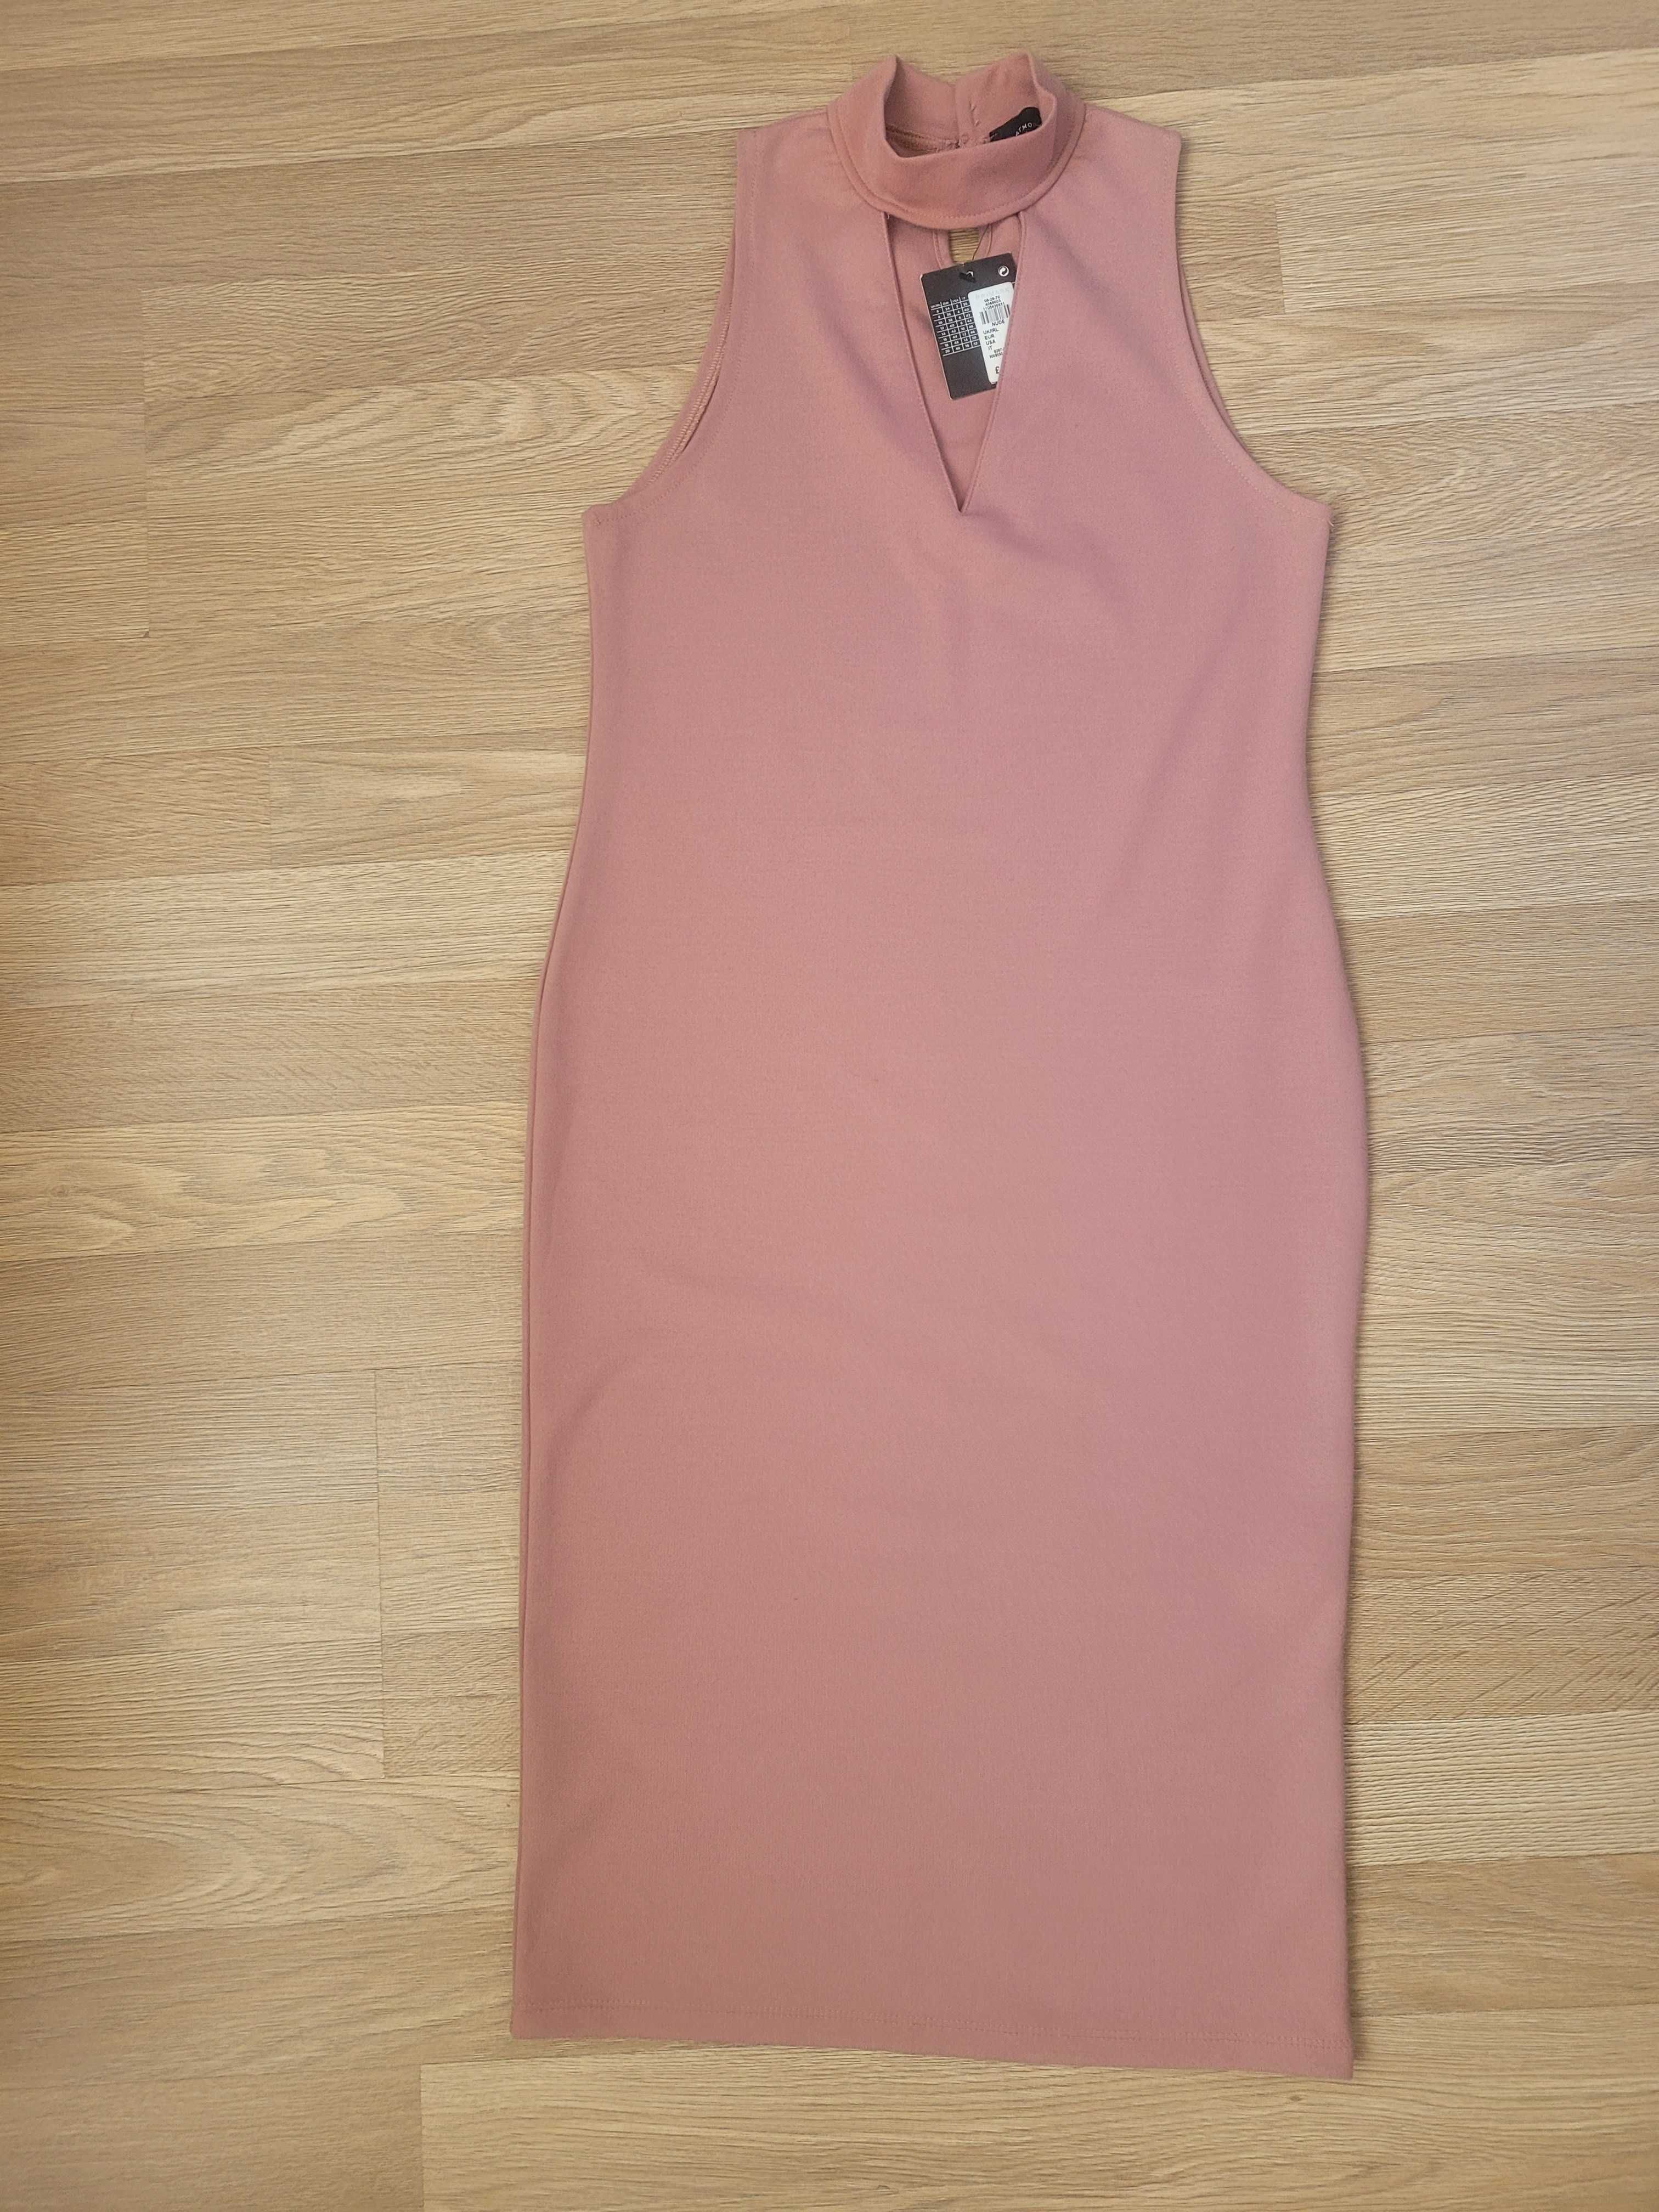 Продам женское платье, Atmosphere, р.S, пудровый розовый цвет, новое